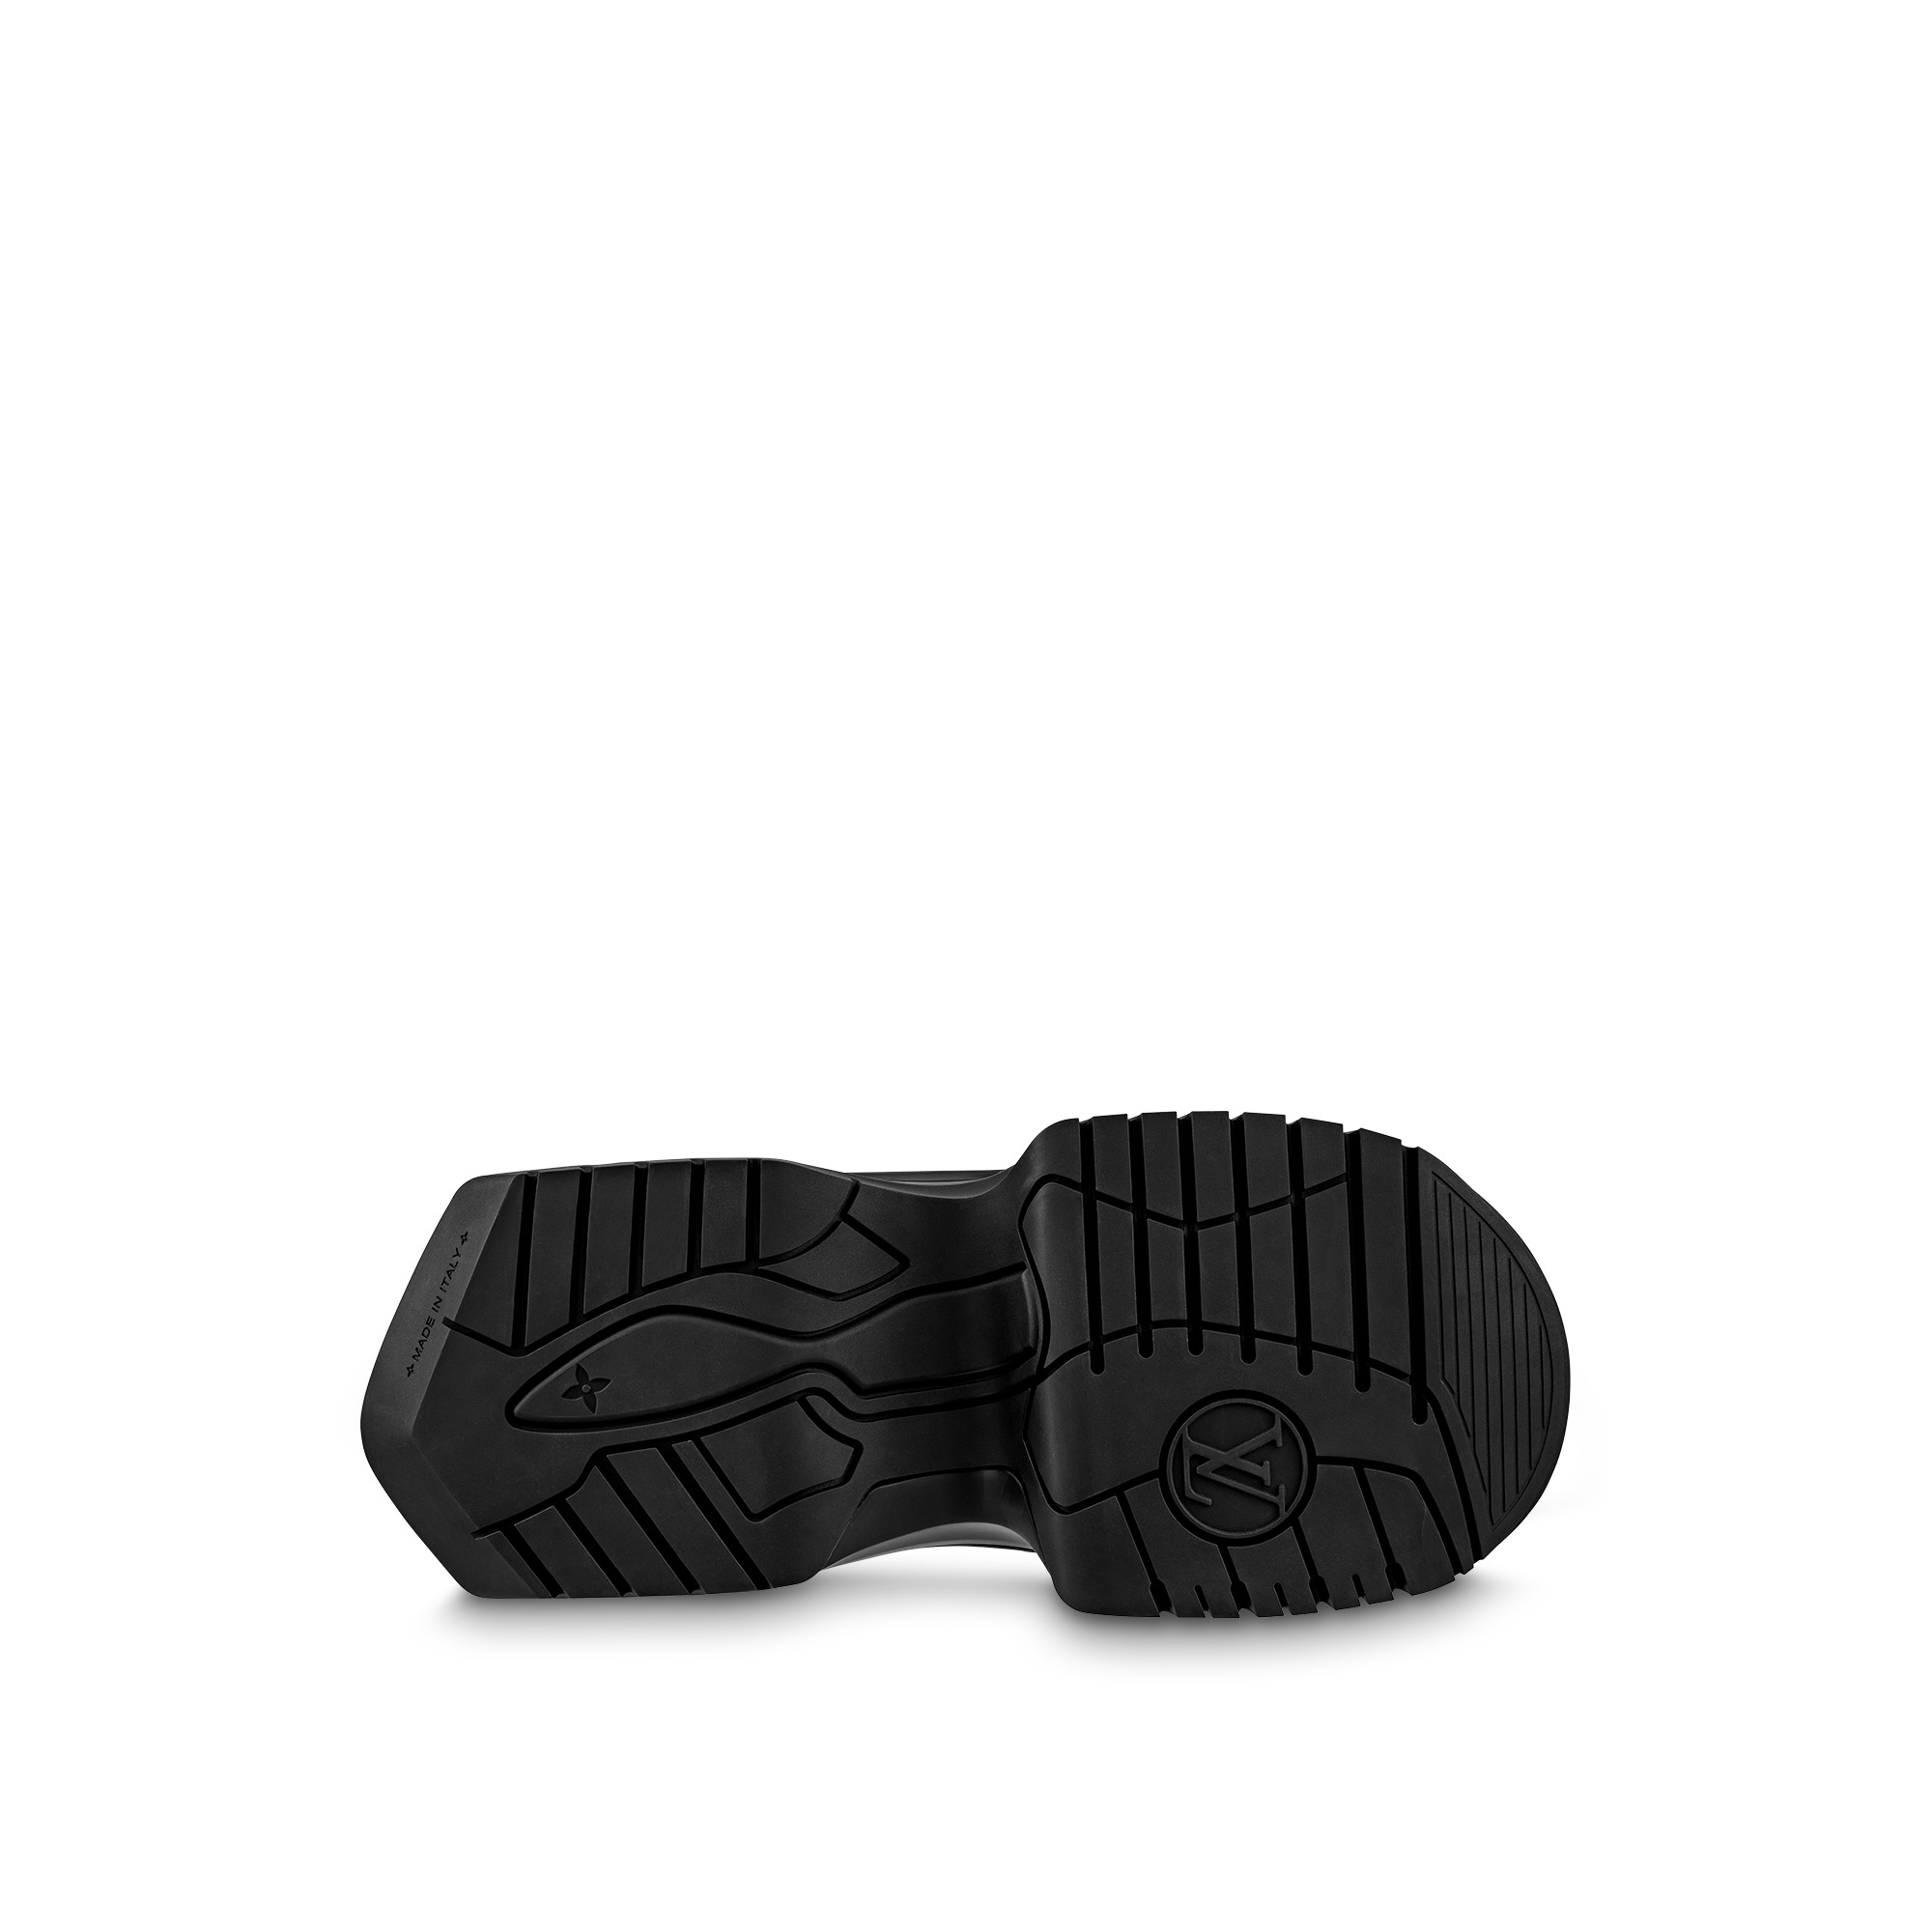 Louis Vuitton LV Archlight 2.0 Platform Ankle Boot Khaki. Size 38.0